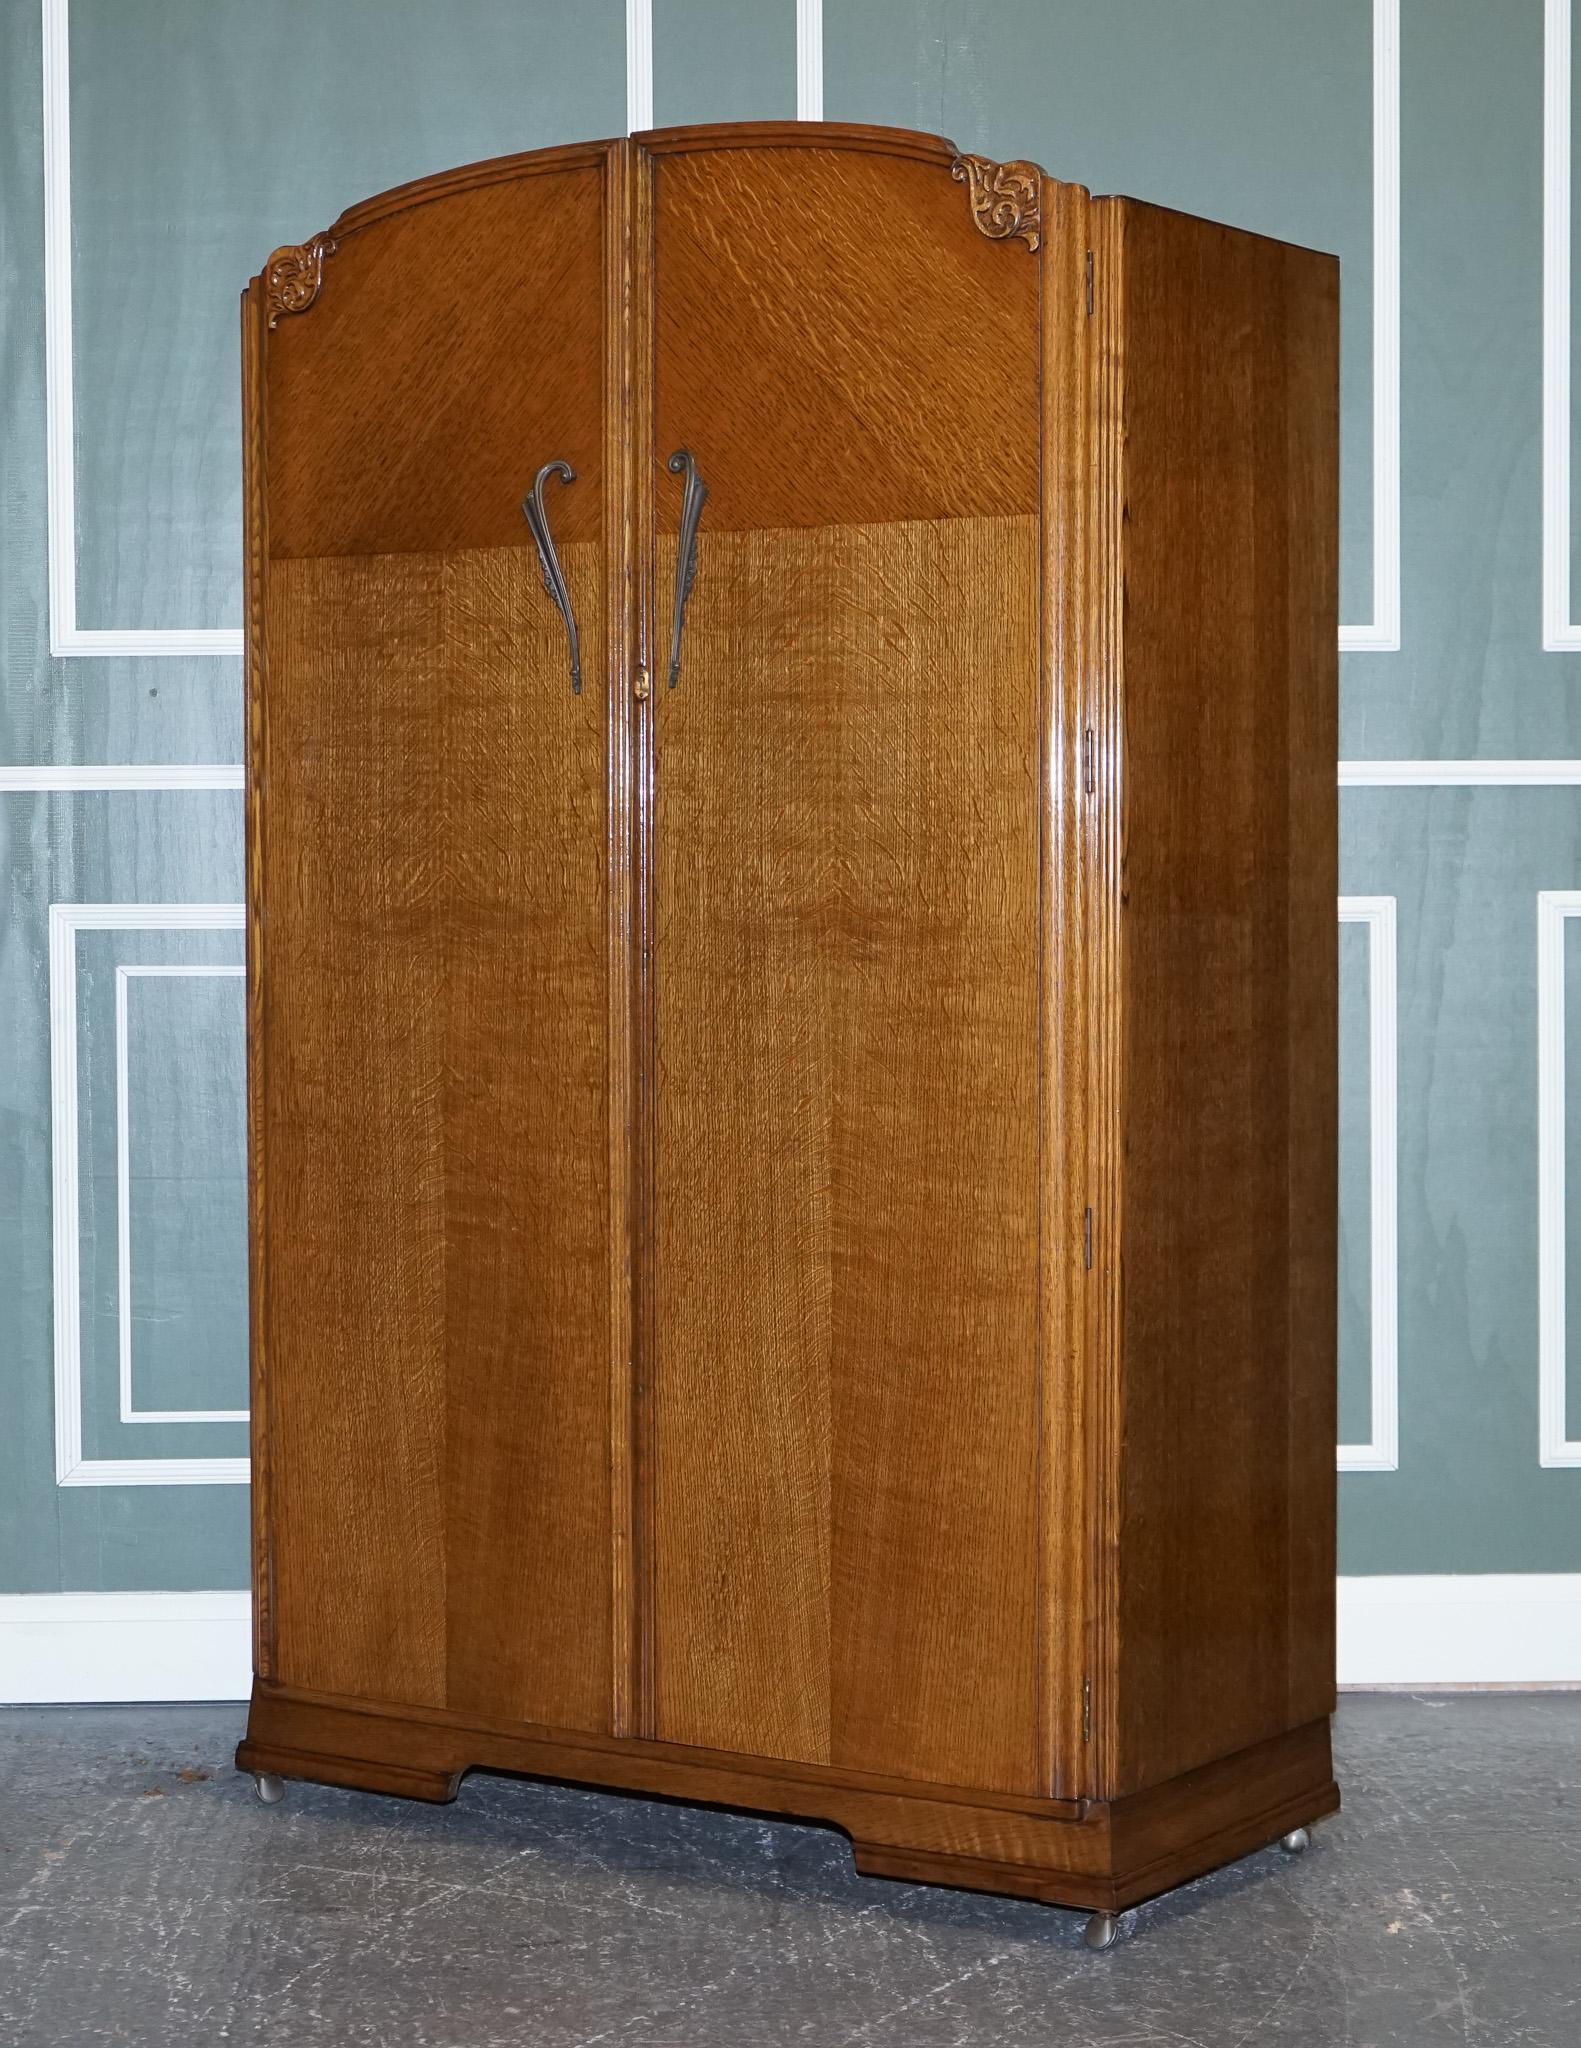 Nous avons le plaisir de vous proposer à la vente une grande armoire vintage art déco en chêne à deux portes.

Une armoire art déco en chêne.
Il est soulevé sur des roulettes, ce qui permet de le déplacer facilement si nécessaire.
À l'intérieur,